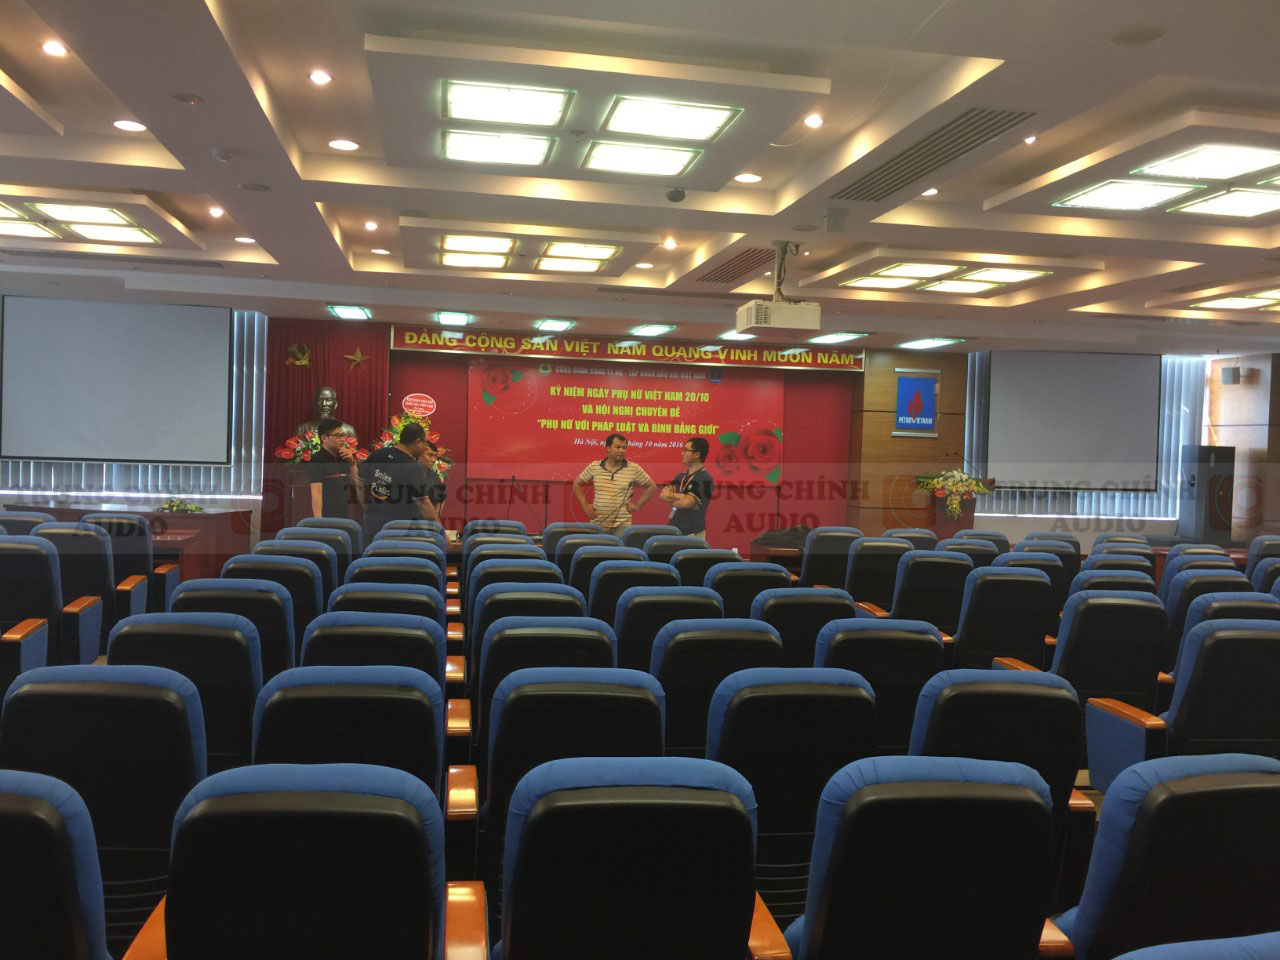 Dàn âm thanh hội trường sân khấu, hệ thống hội thảo phòng họp: Dầu Khí Việt Nam